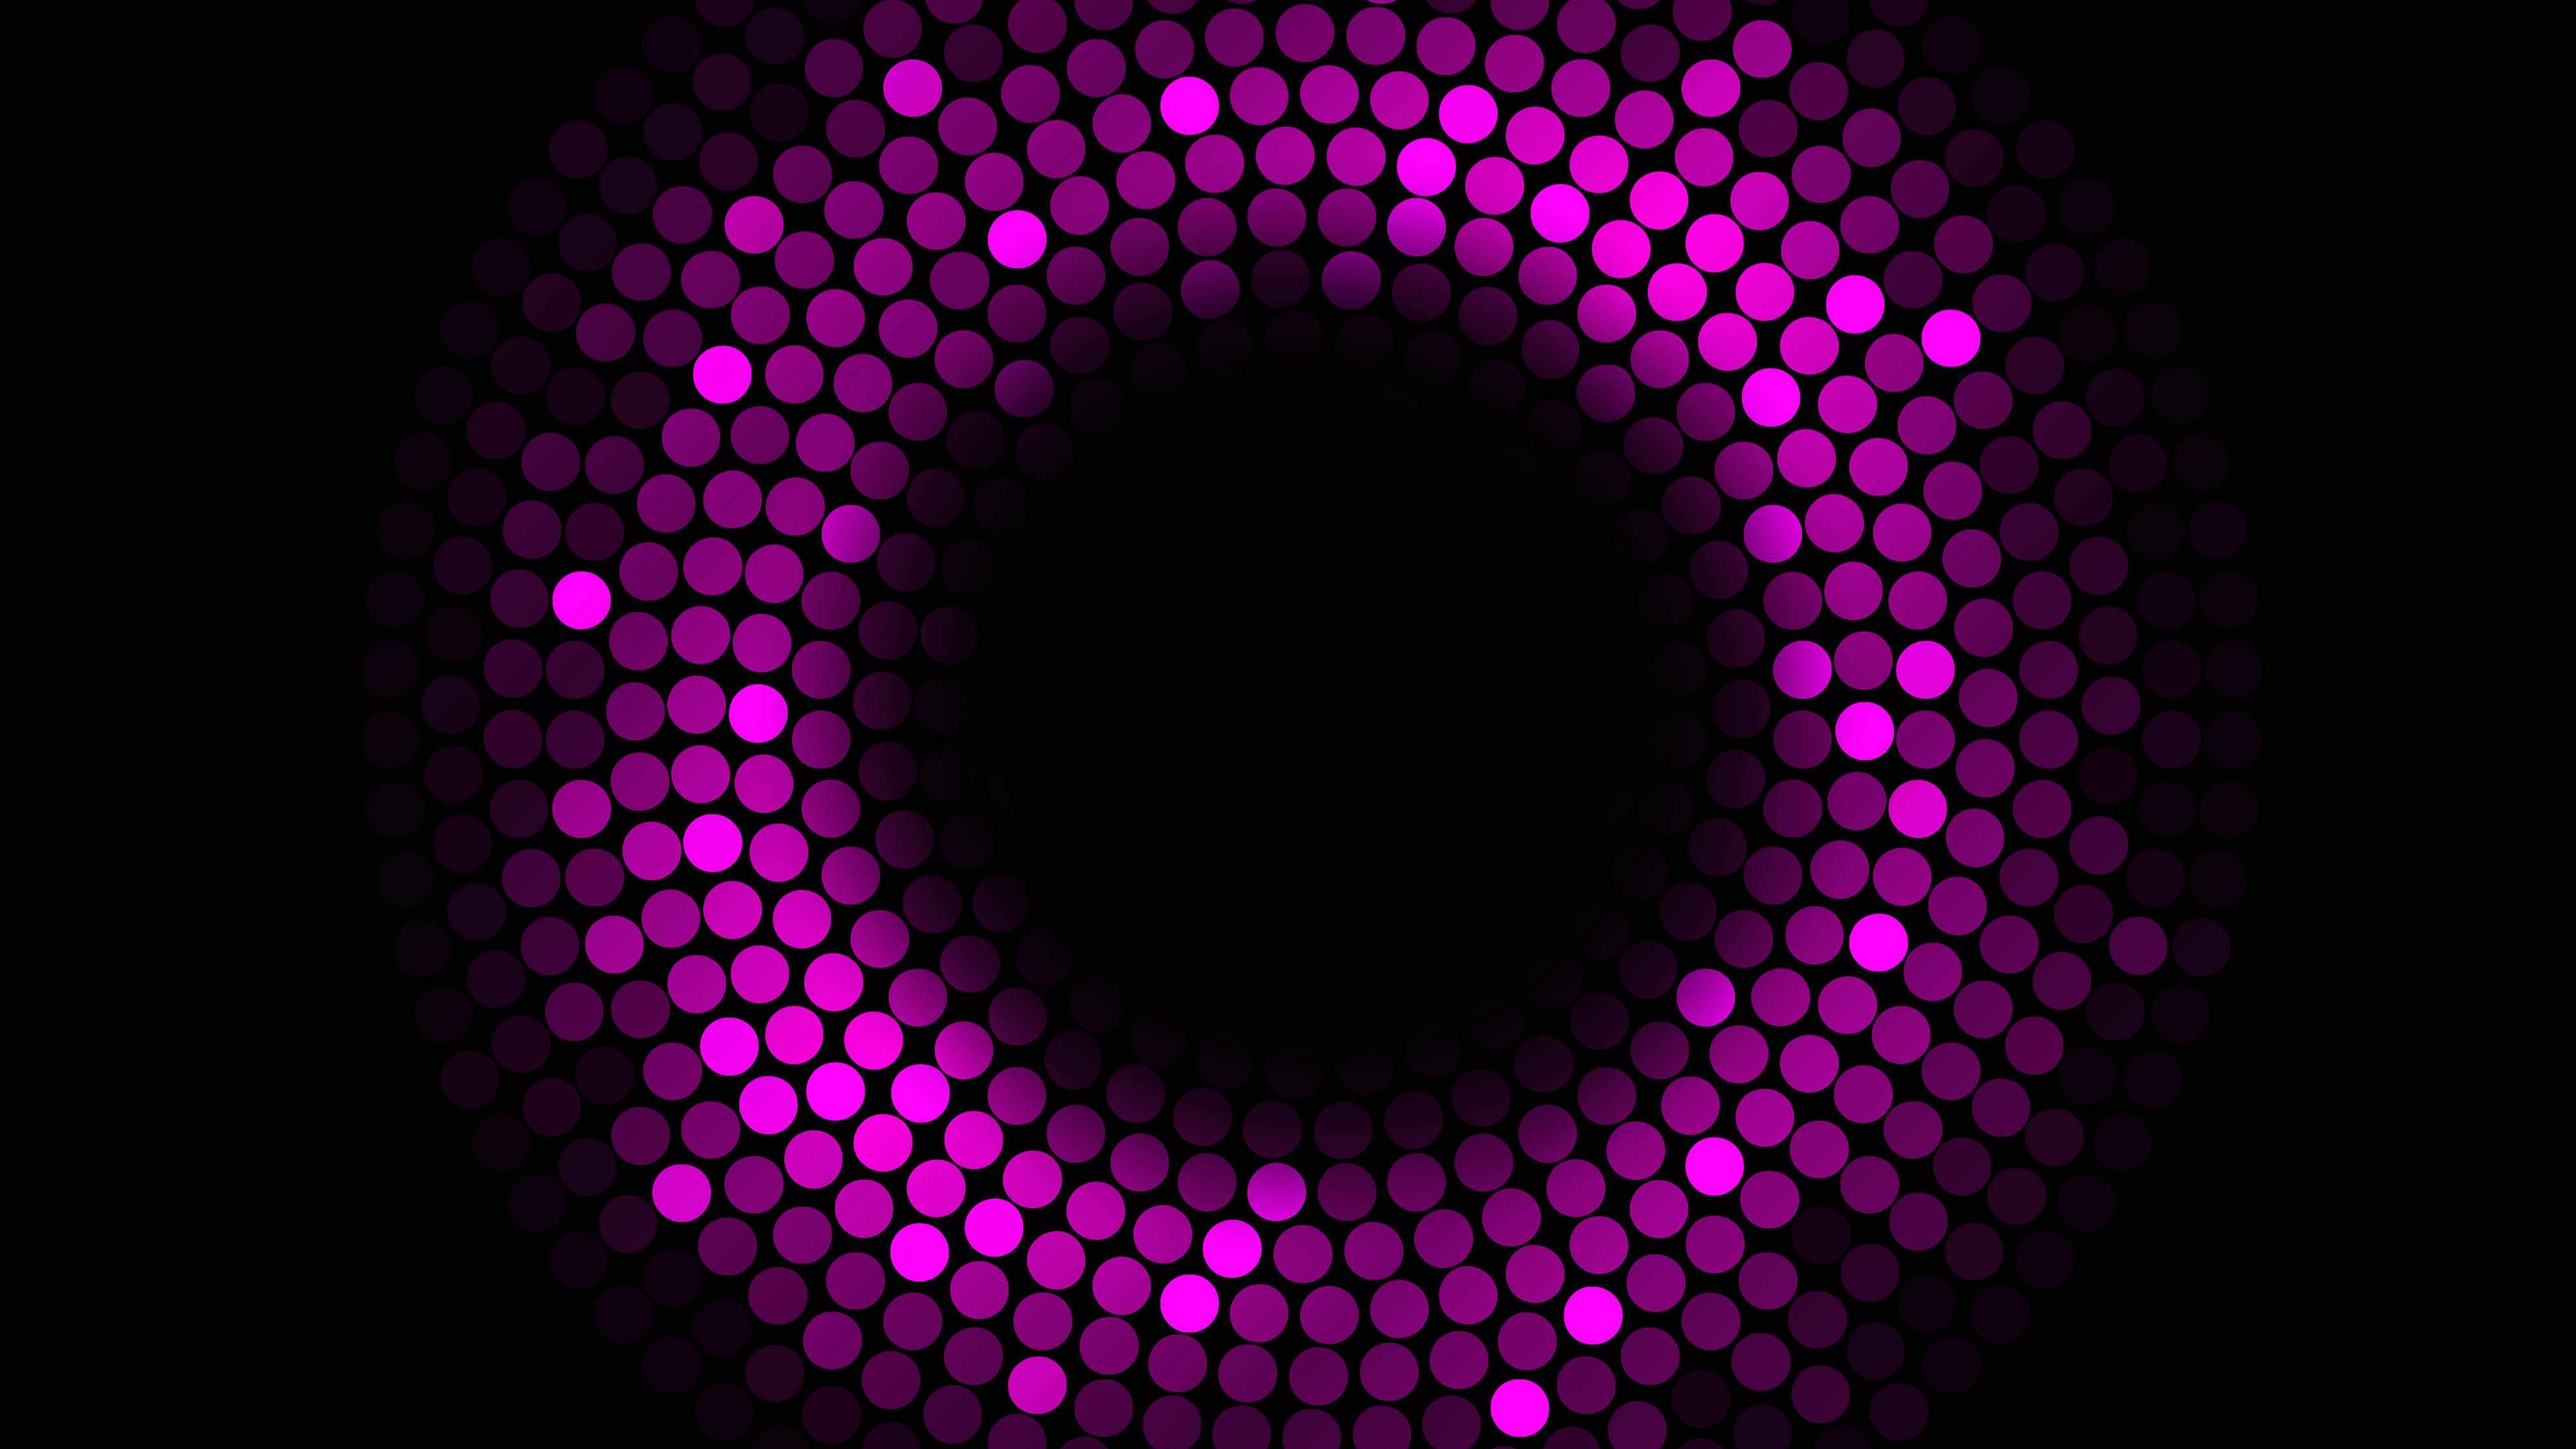 Abstract Circles Violet 4k Violet Wallpaper, Hd Wallpaper, Dots Wallpaper, Circle Wallpaper, Abstract Wallpaper. Abstract Wallpaper, Dots Wallpaper, Abstract